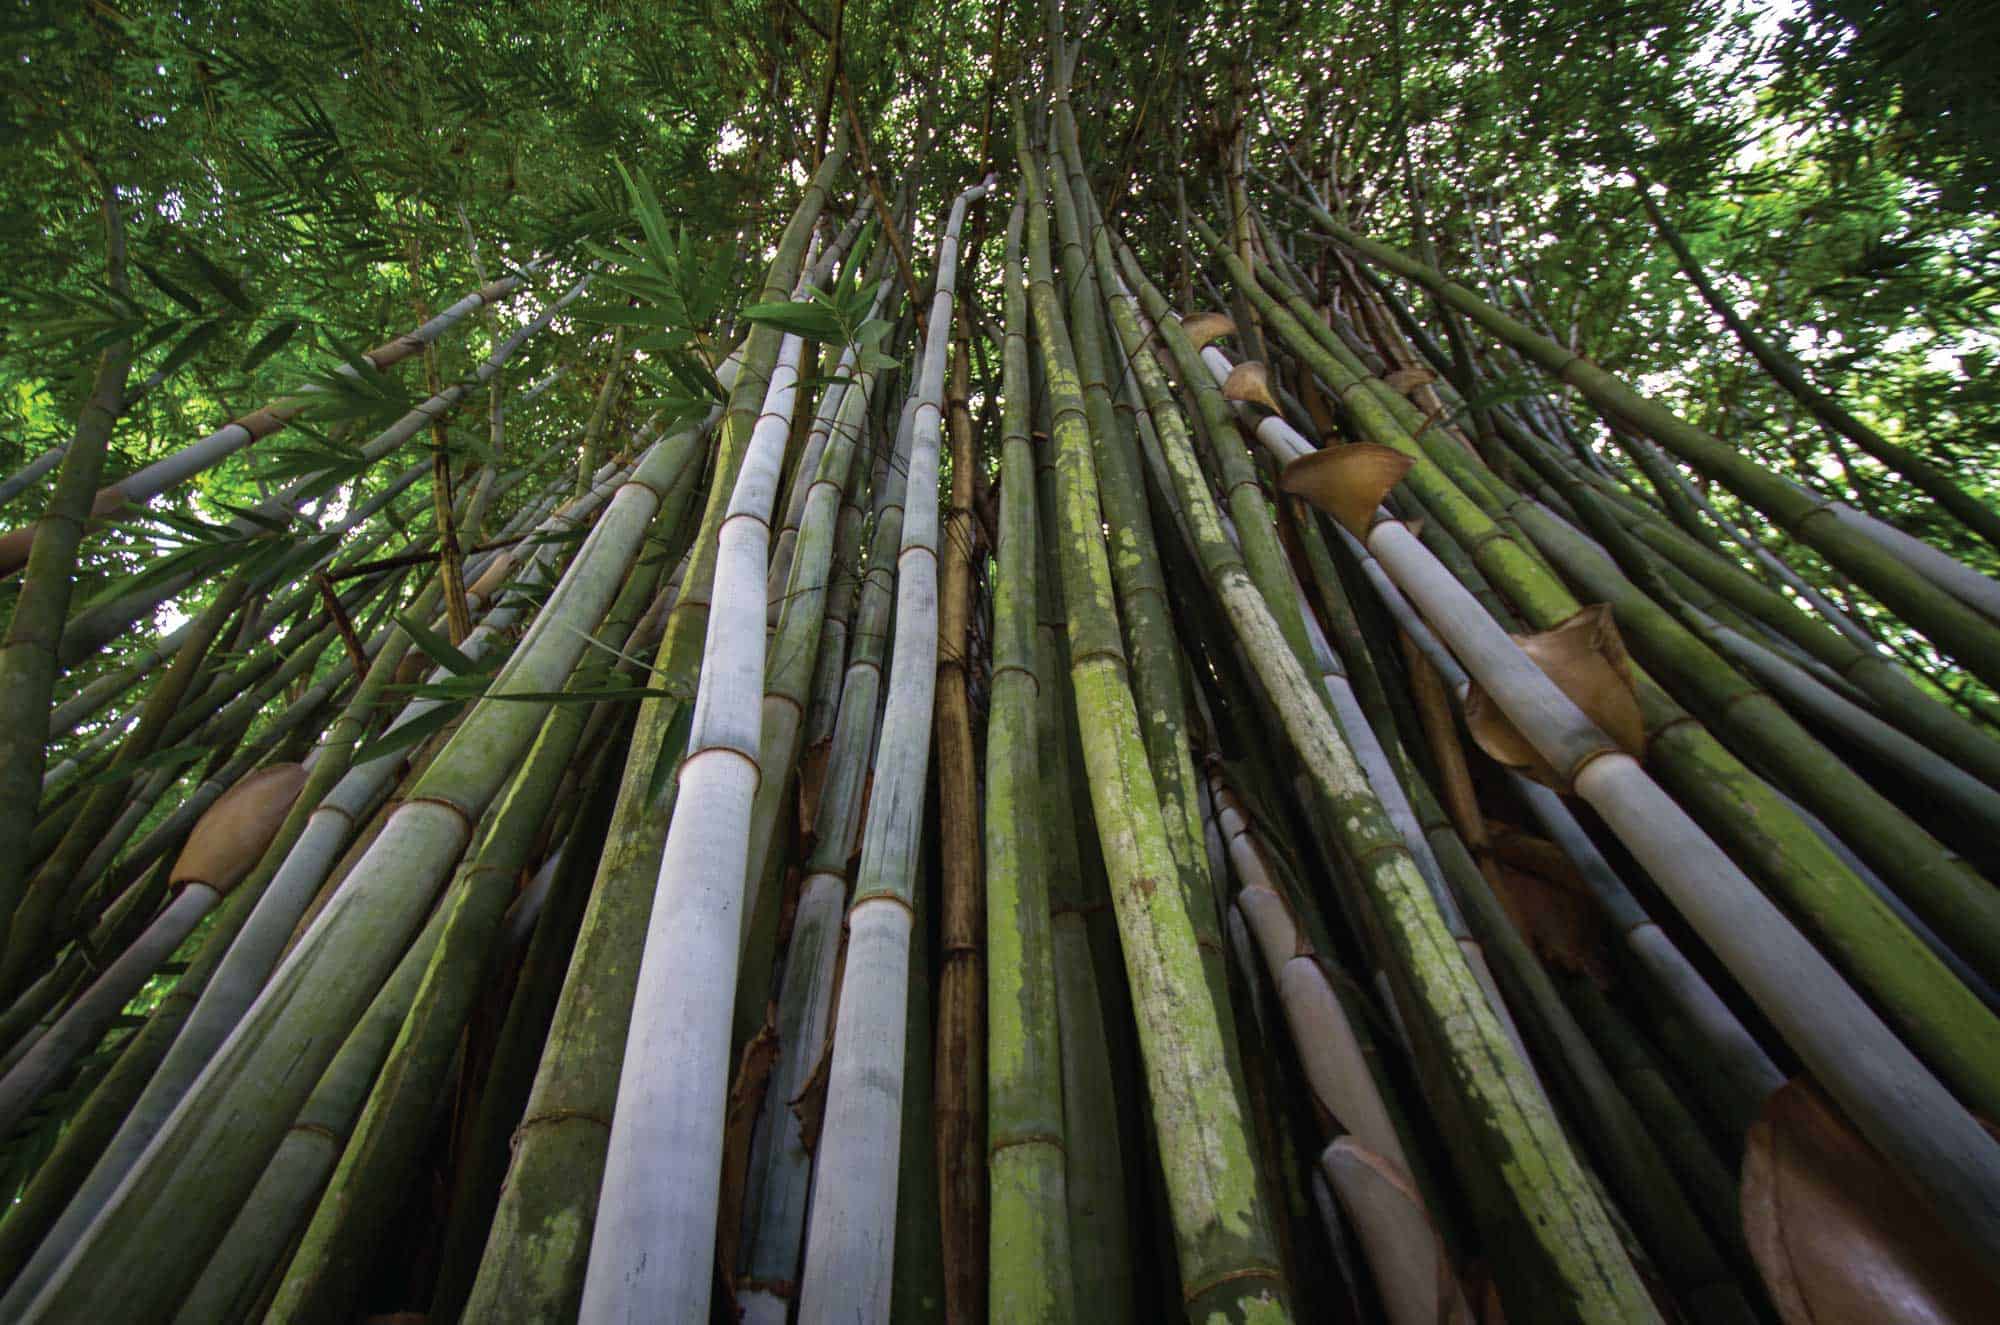 Paraiso del Bambu y la Guadua